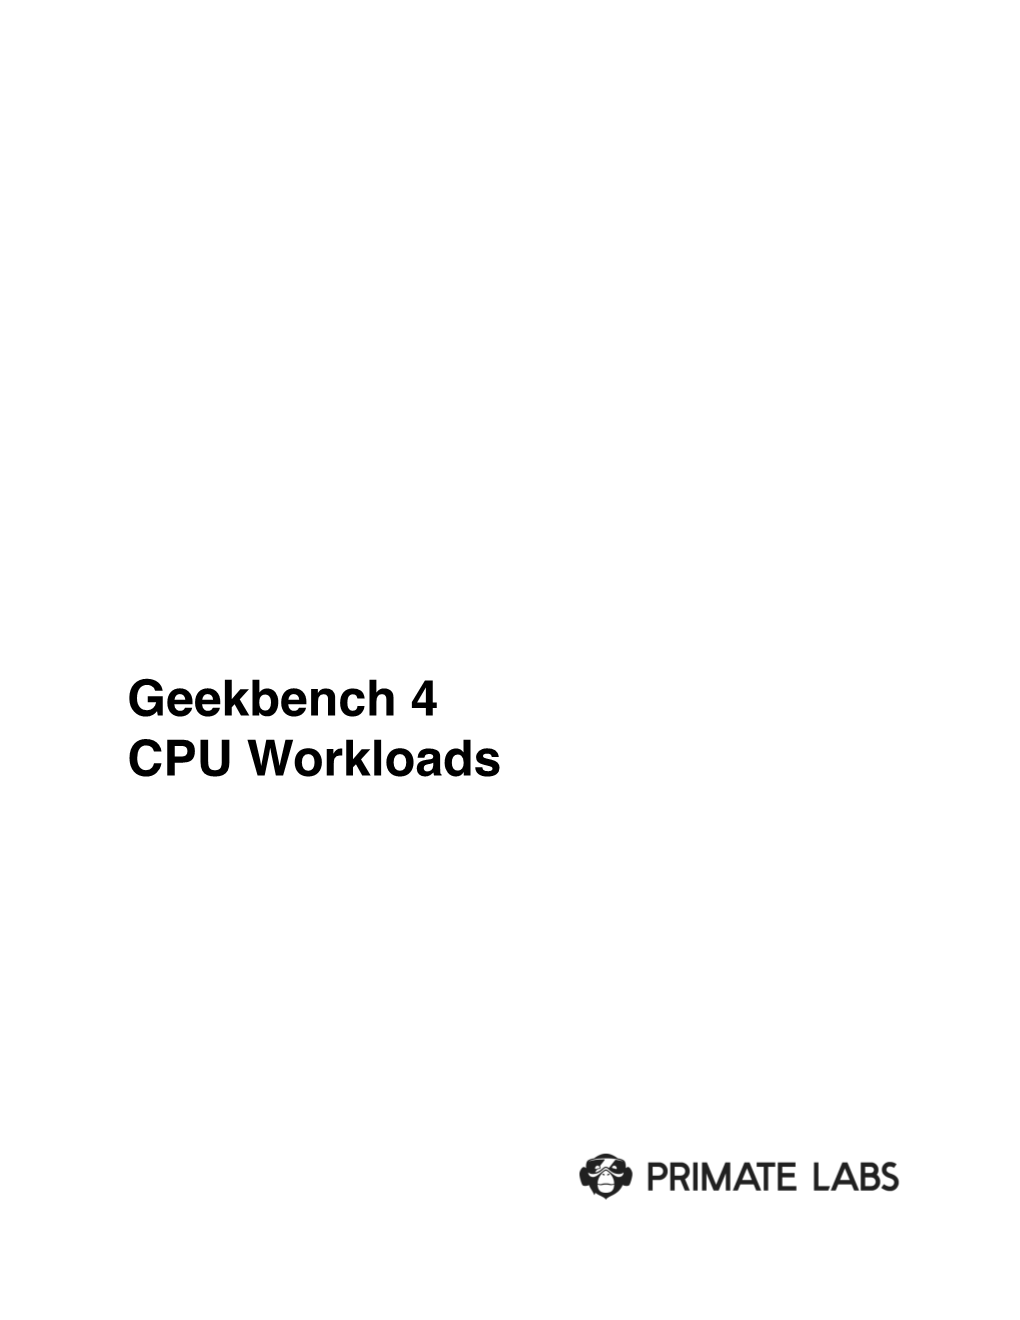 Geekbench 4 CPU Workloads